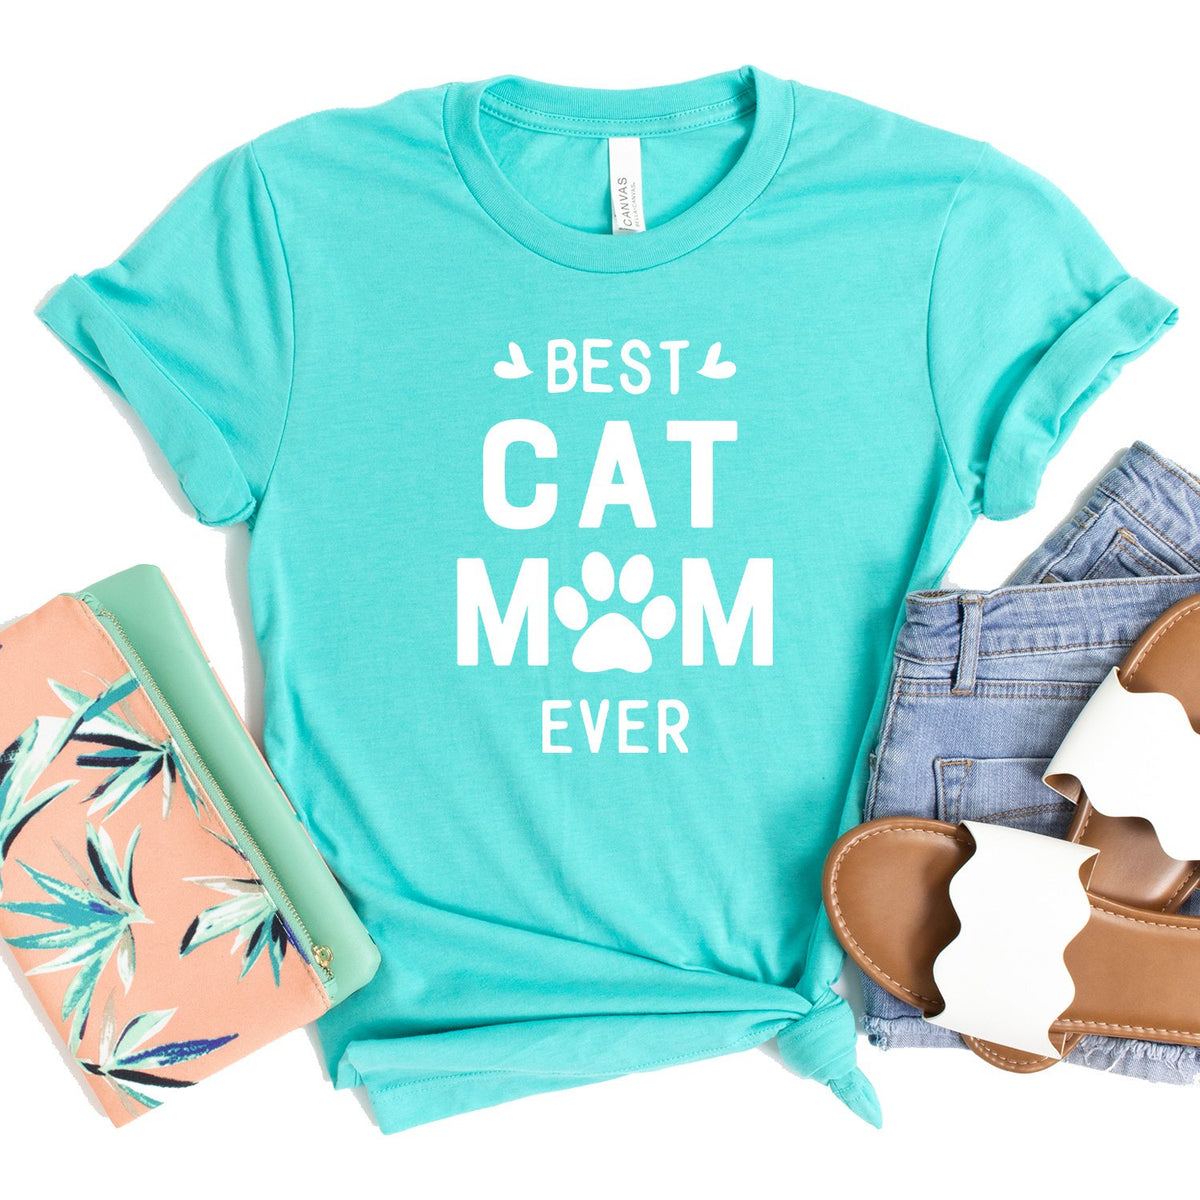 Best Cat Mom Ever - Short Sleeve Tee Shirt